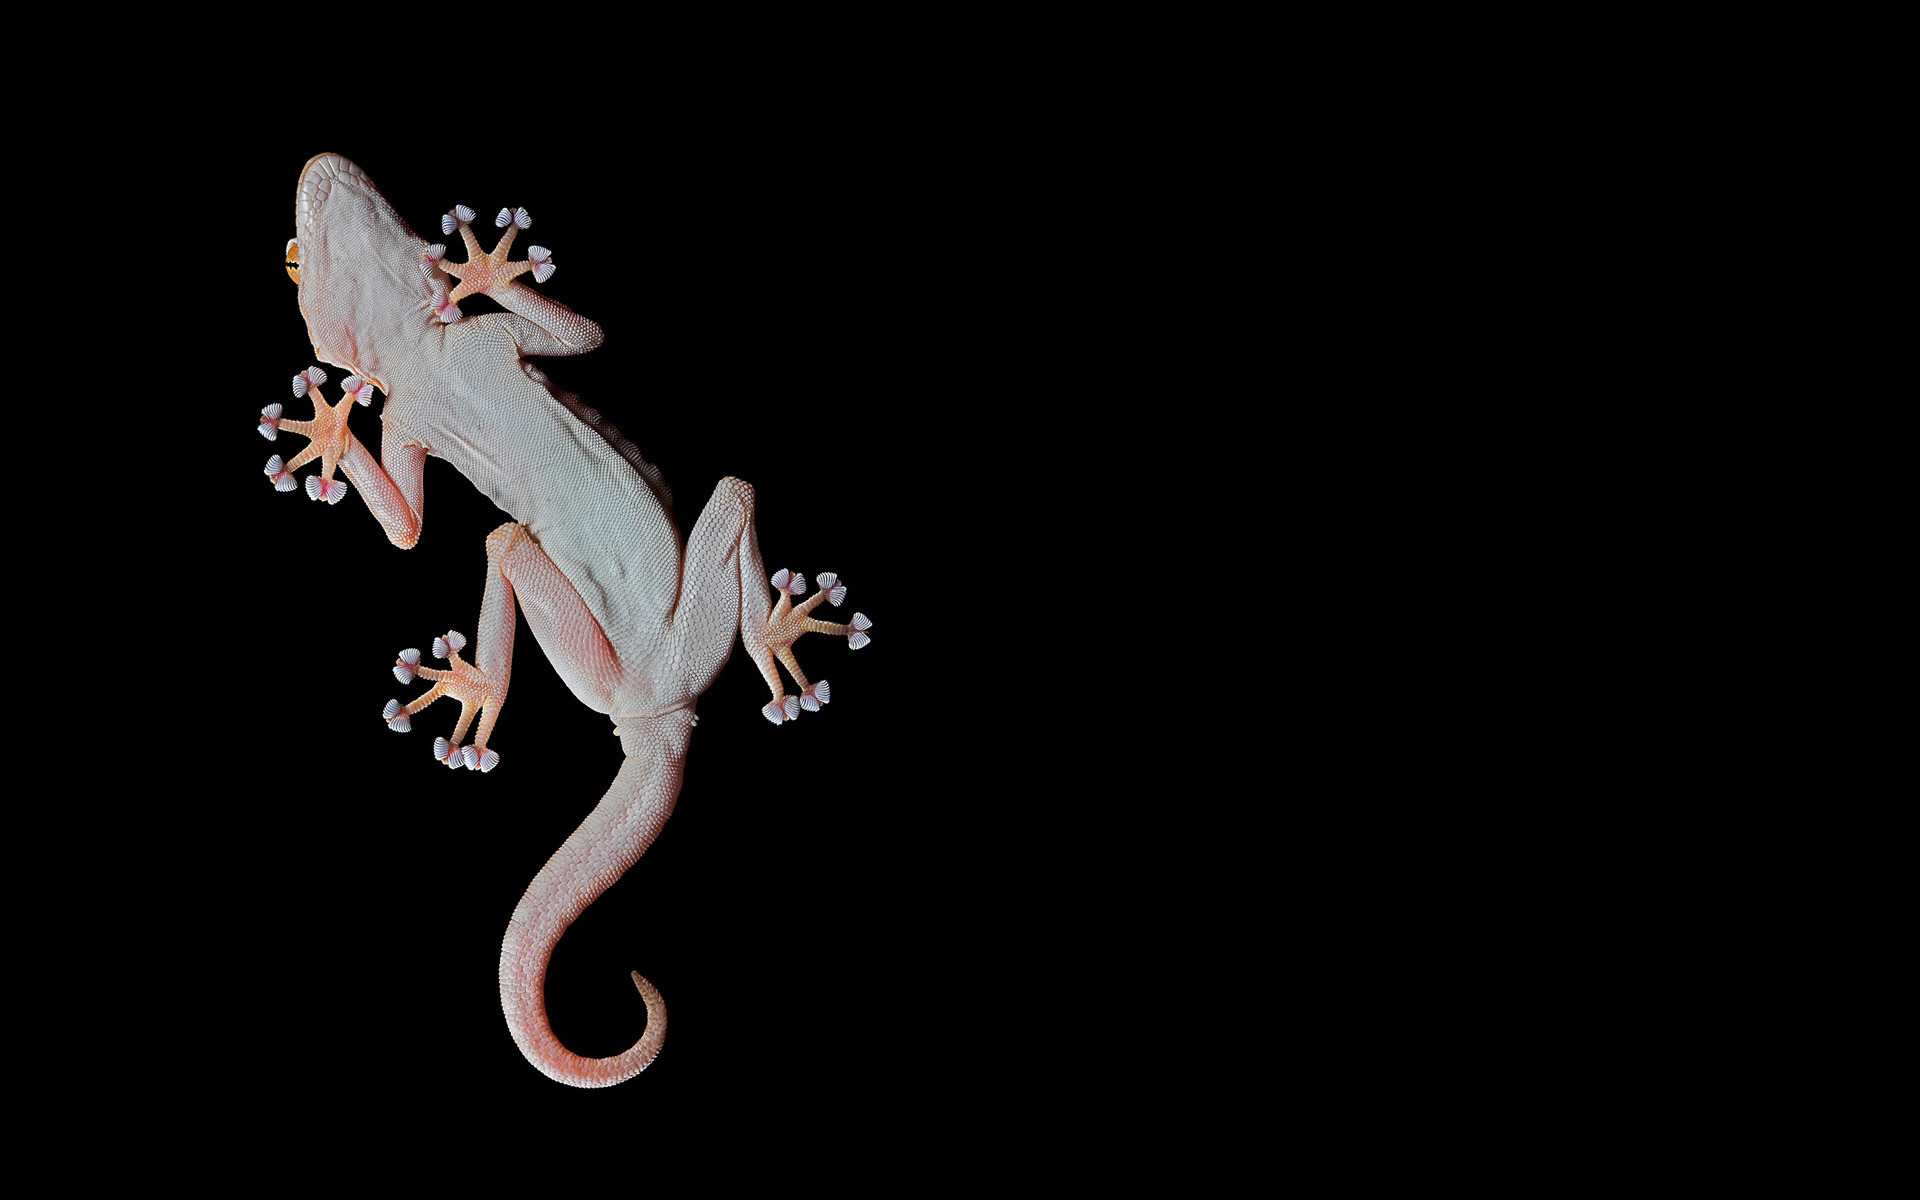 Fonds d'écran Gecko : tous les wallpapers Gecko